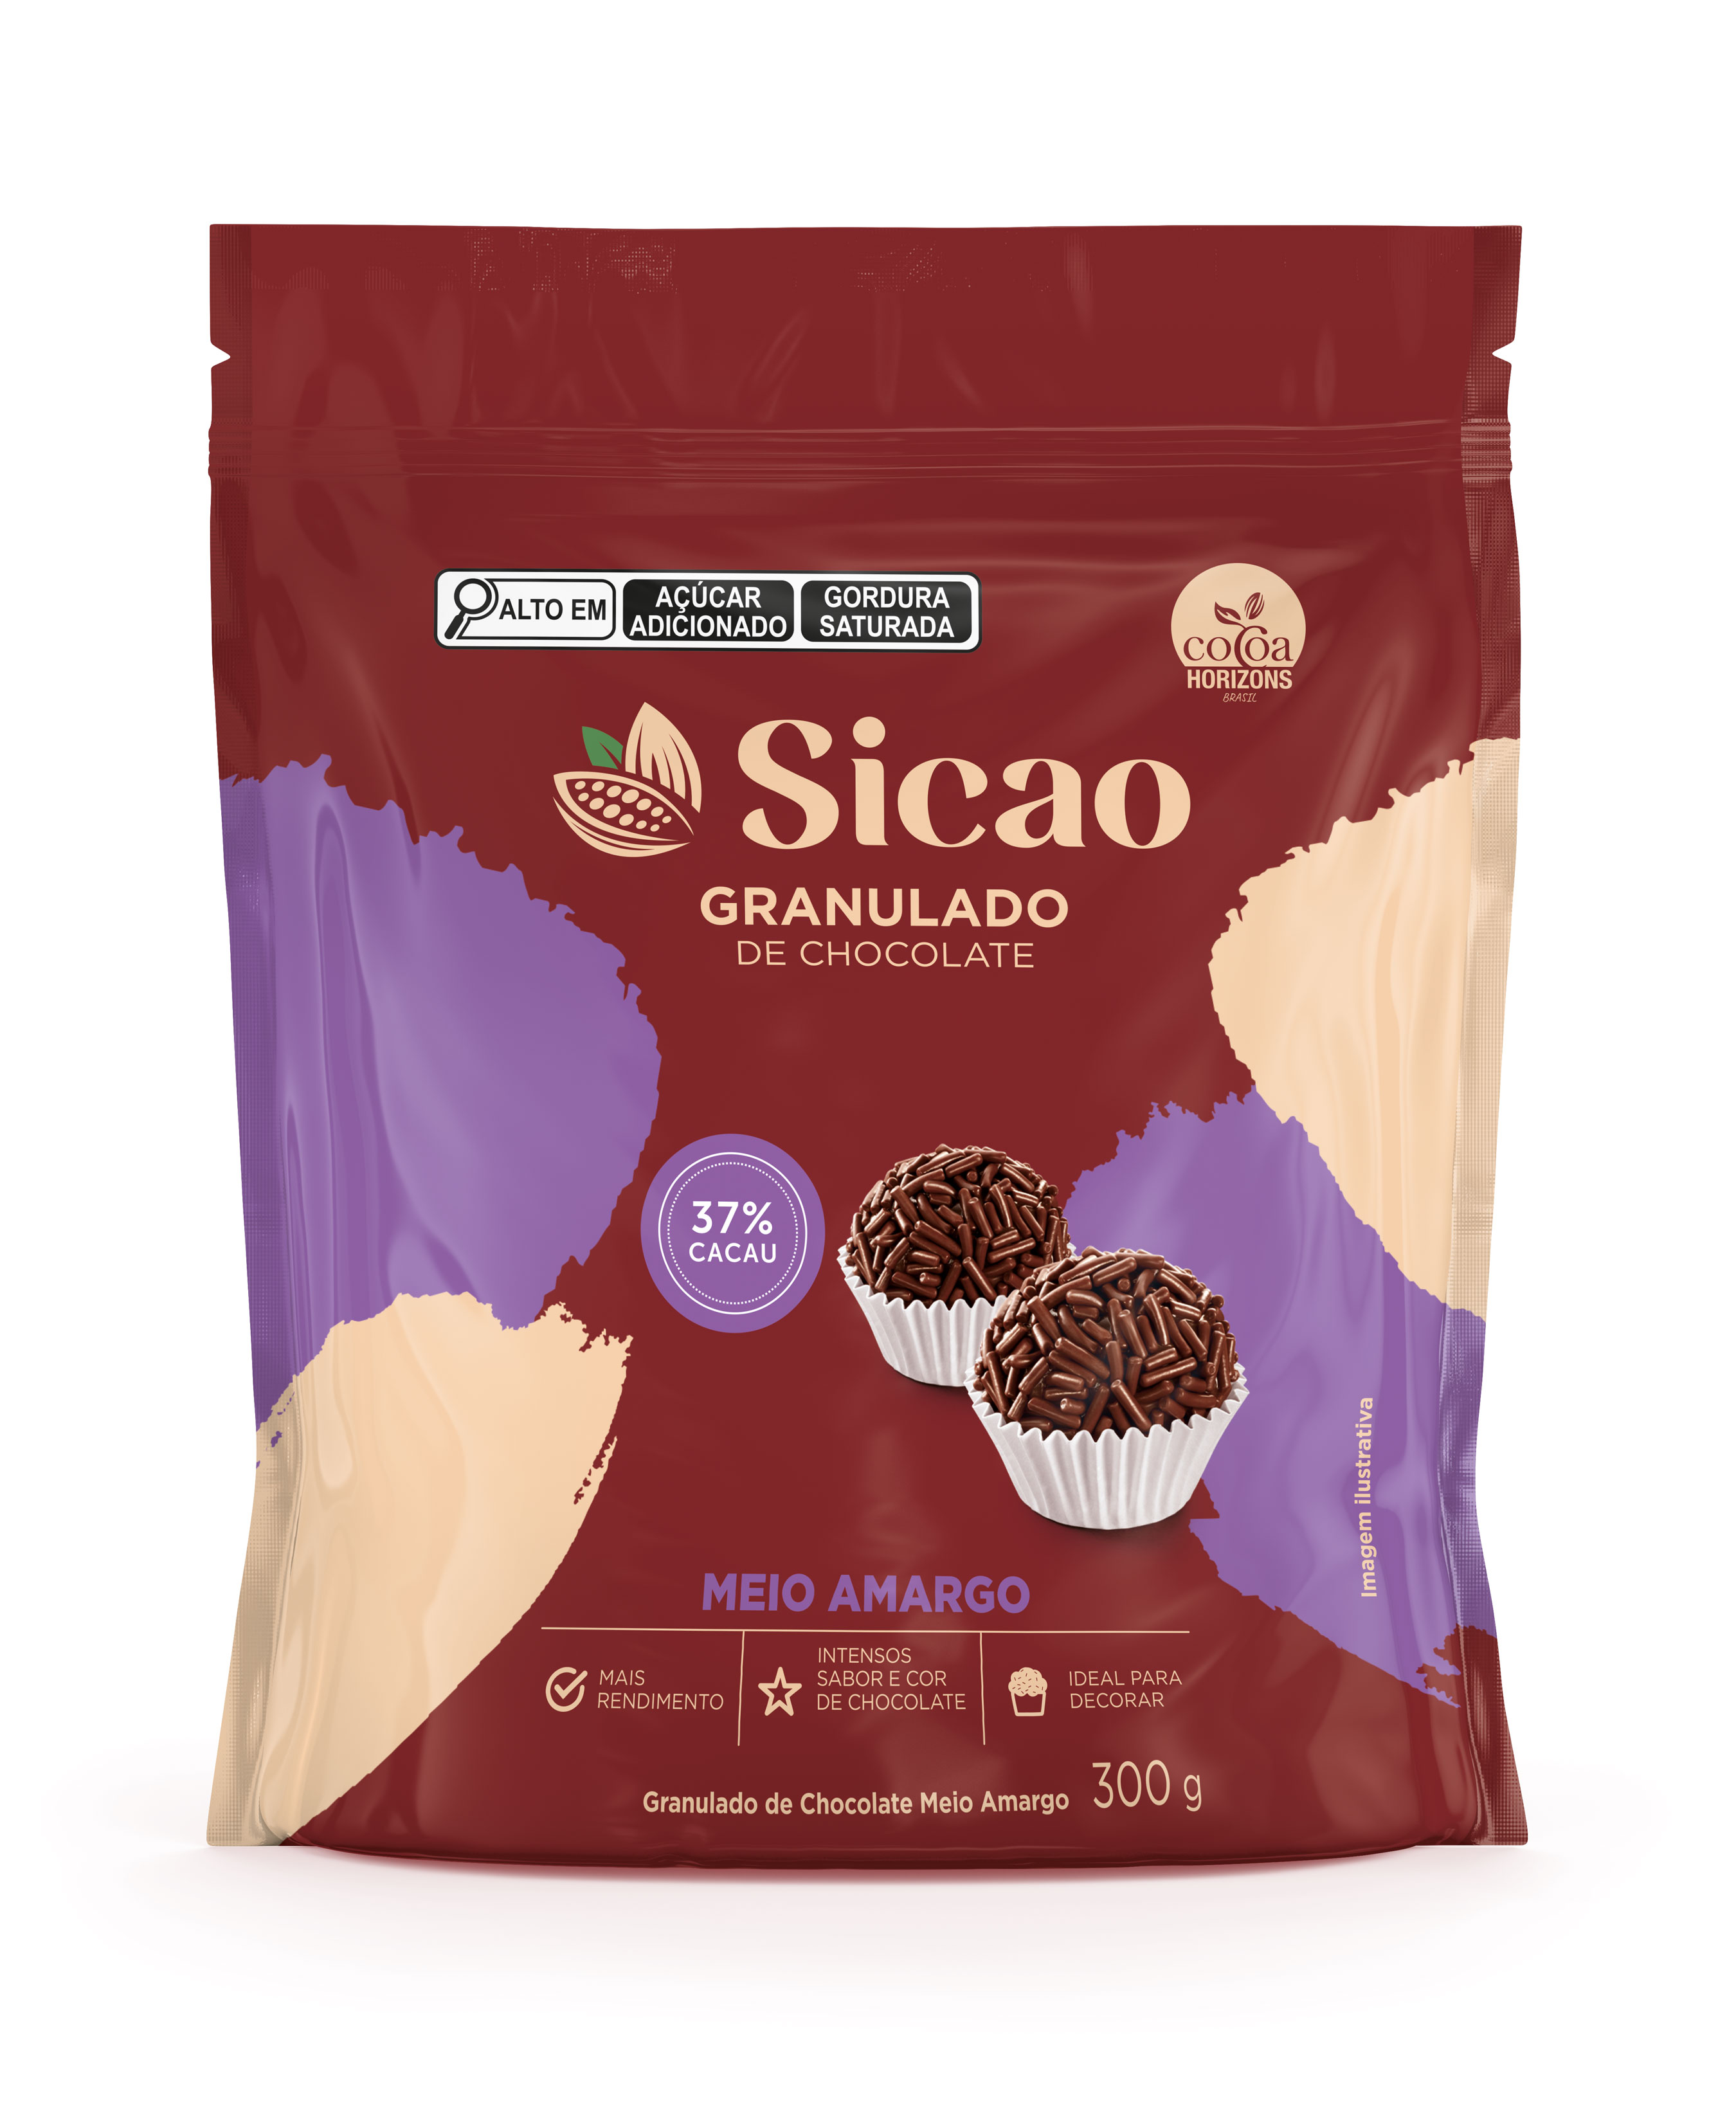 Granulado de Chocolate Meio Amargo Sicao 37% - 300g (1)